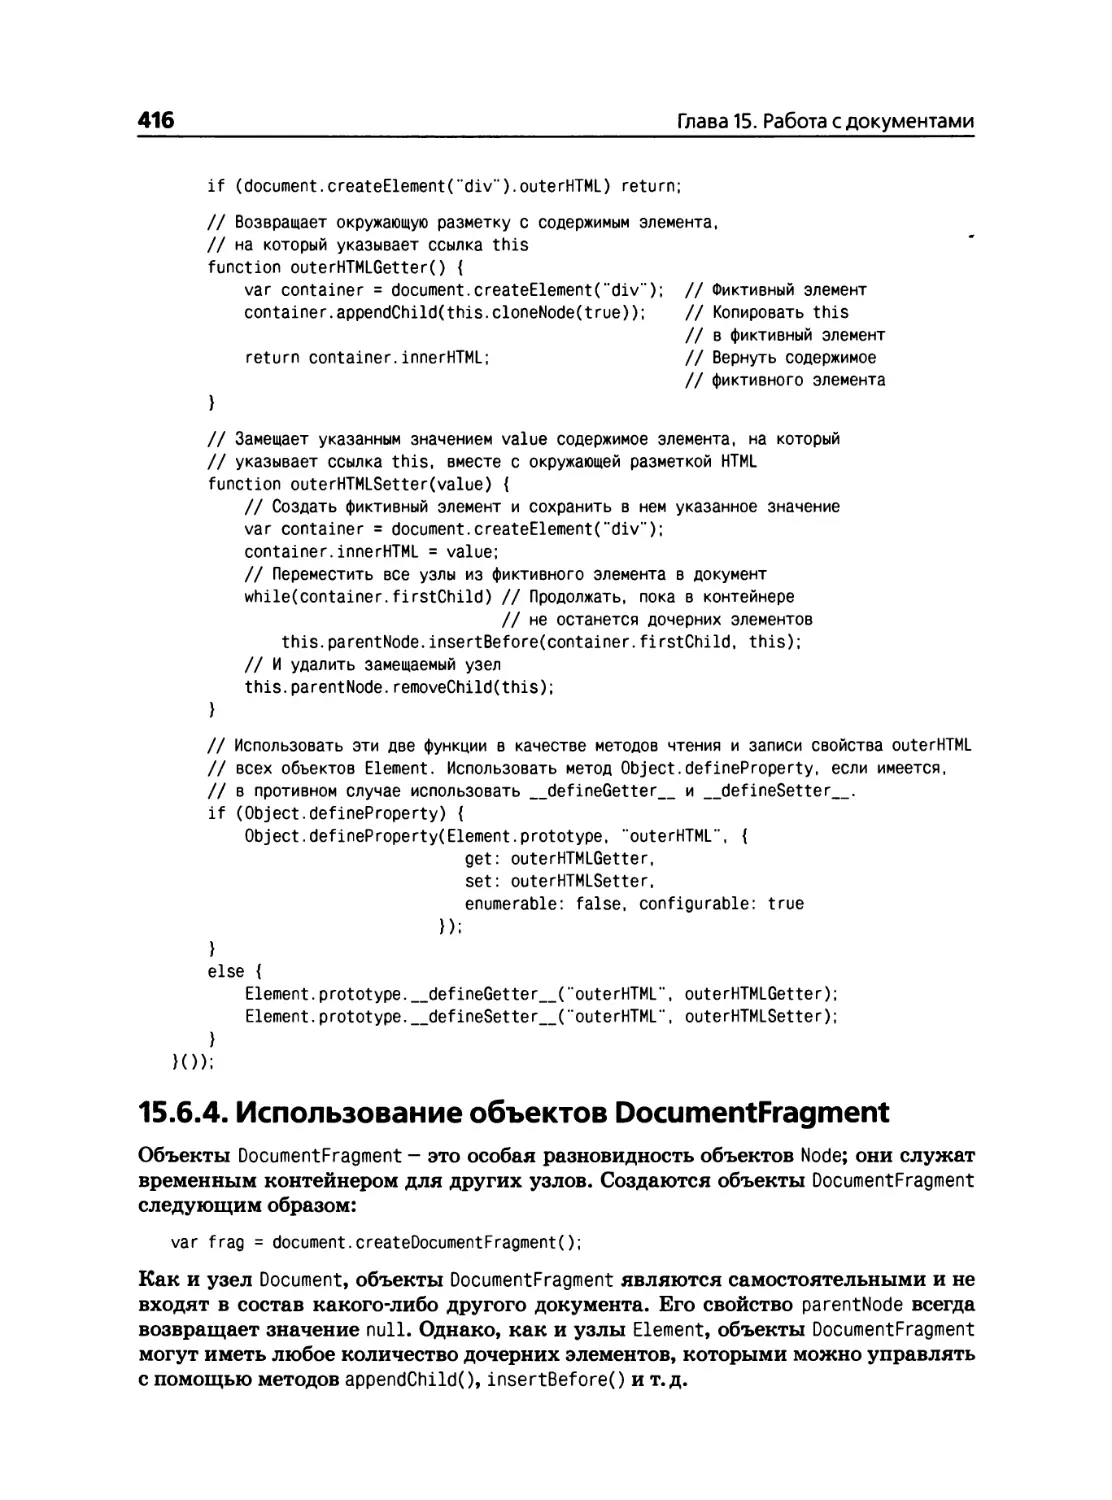 15.6.4. Использование объектов DocumentFragment